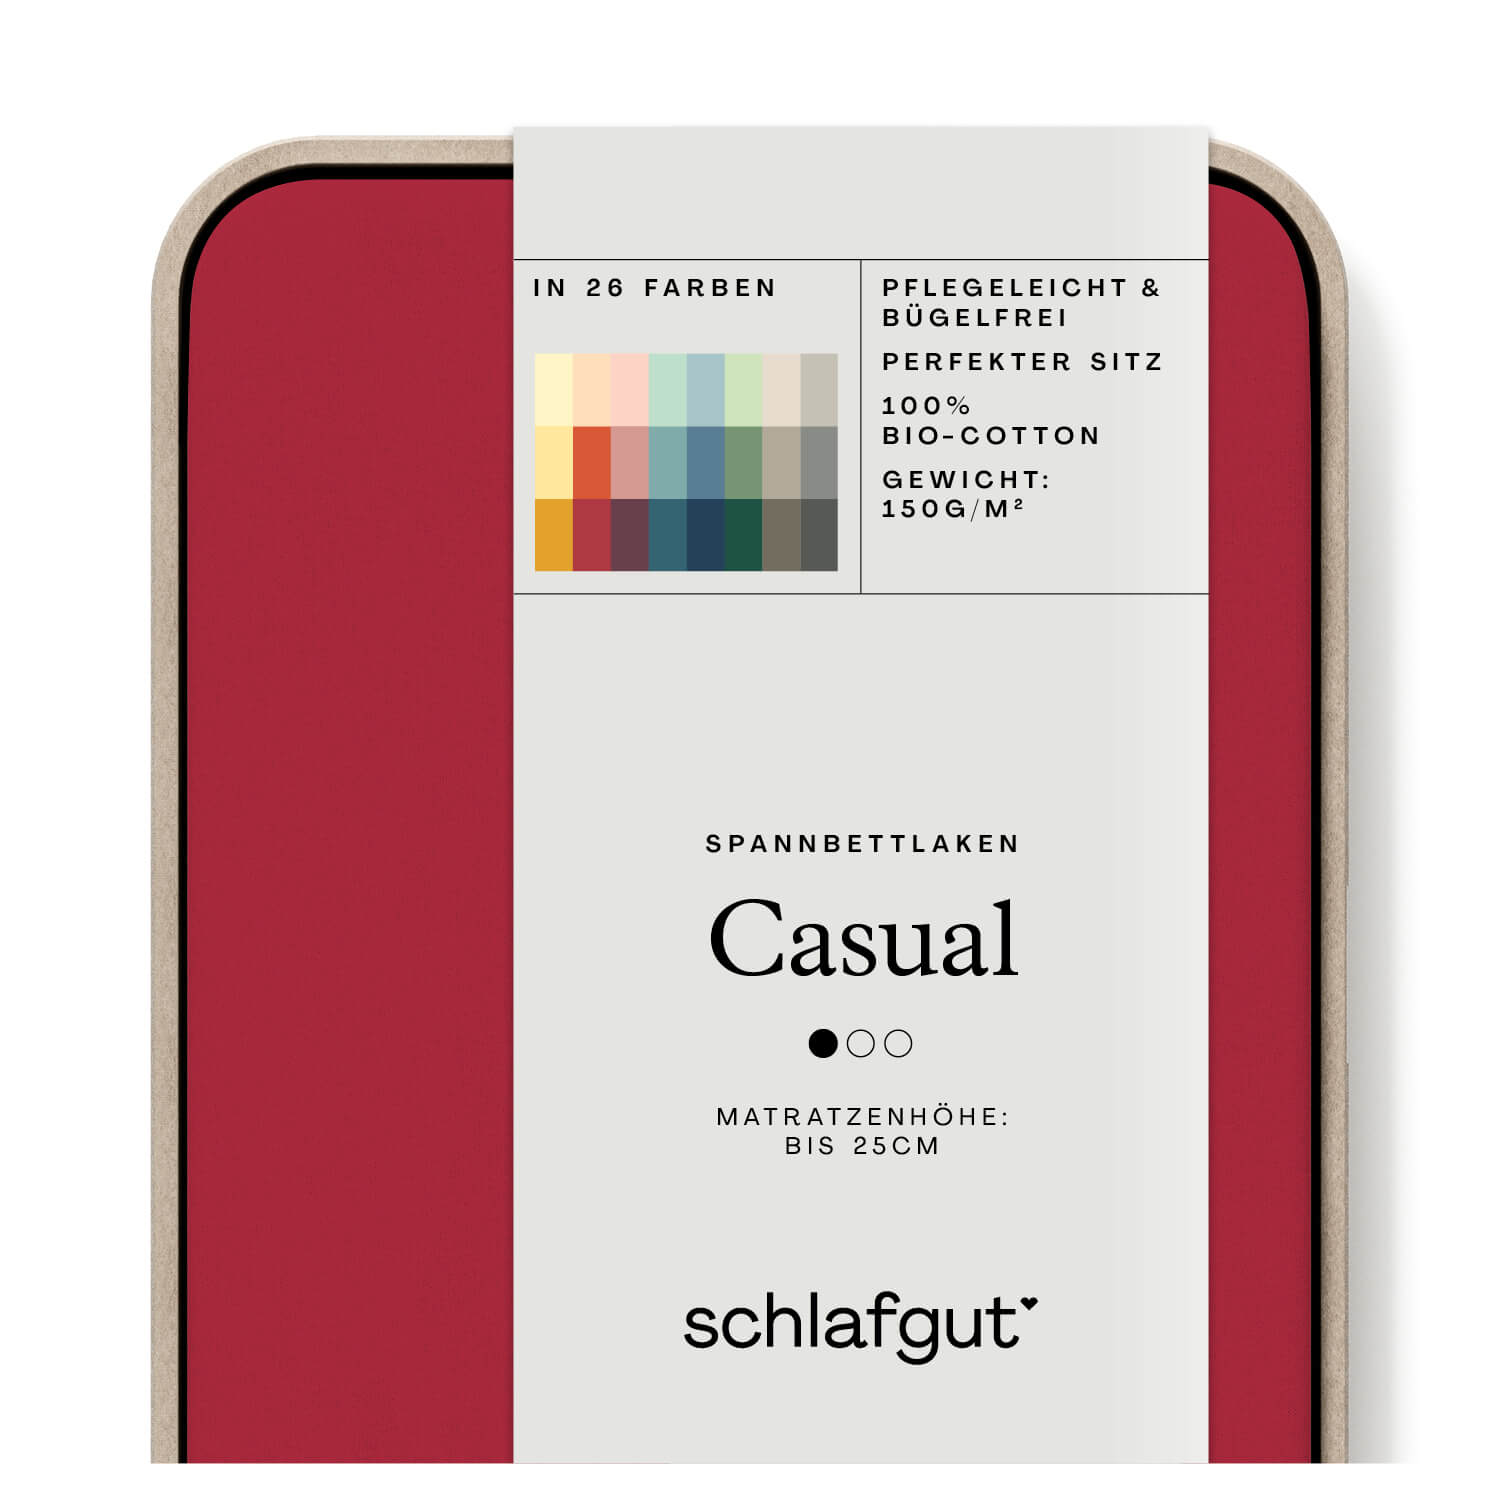 Das Produktbild vom Spannbettlaken der Reihe Casual in Farbe red deep von Schlafgut